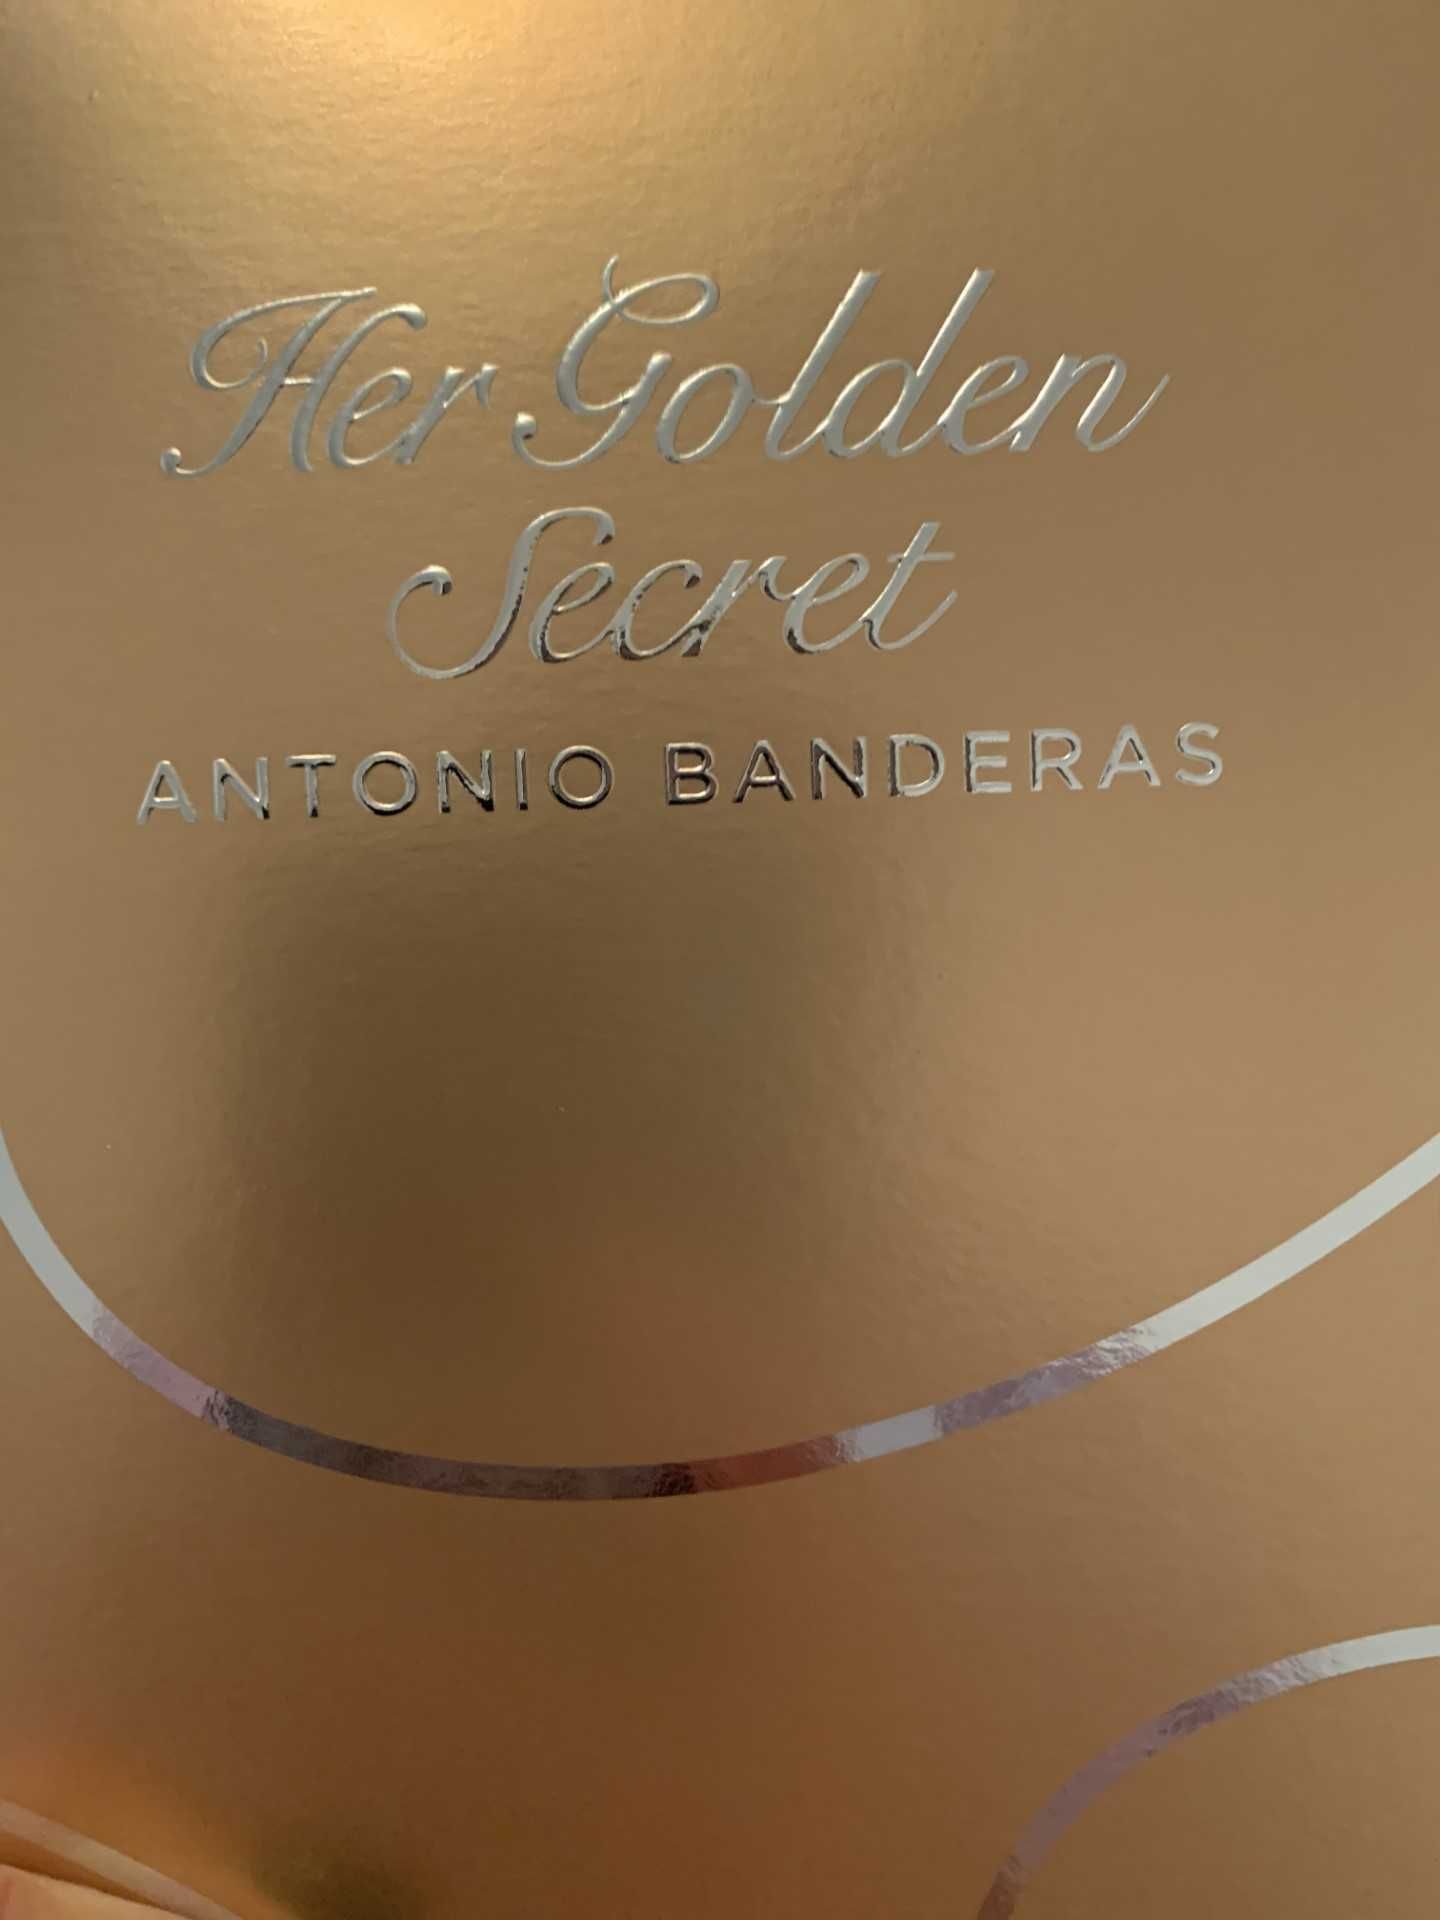 Conjunto Antonio Banderas